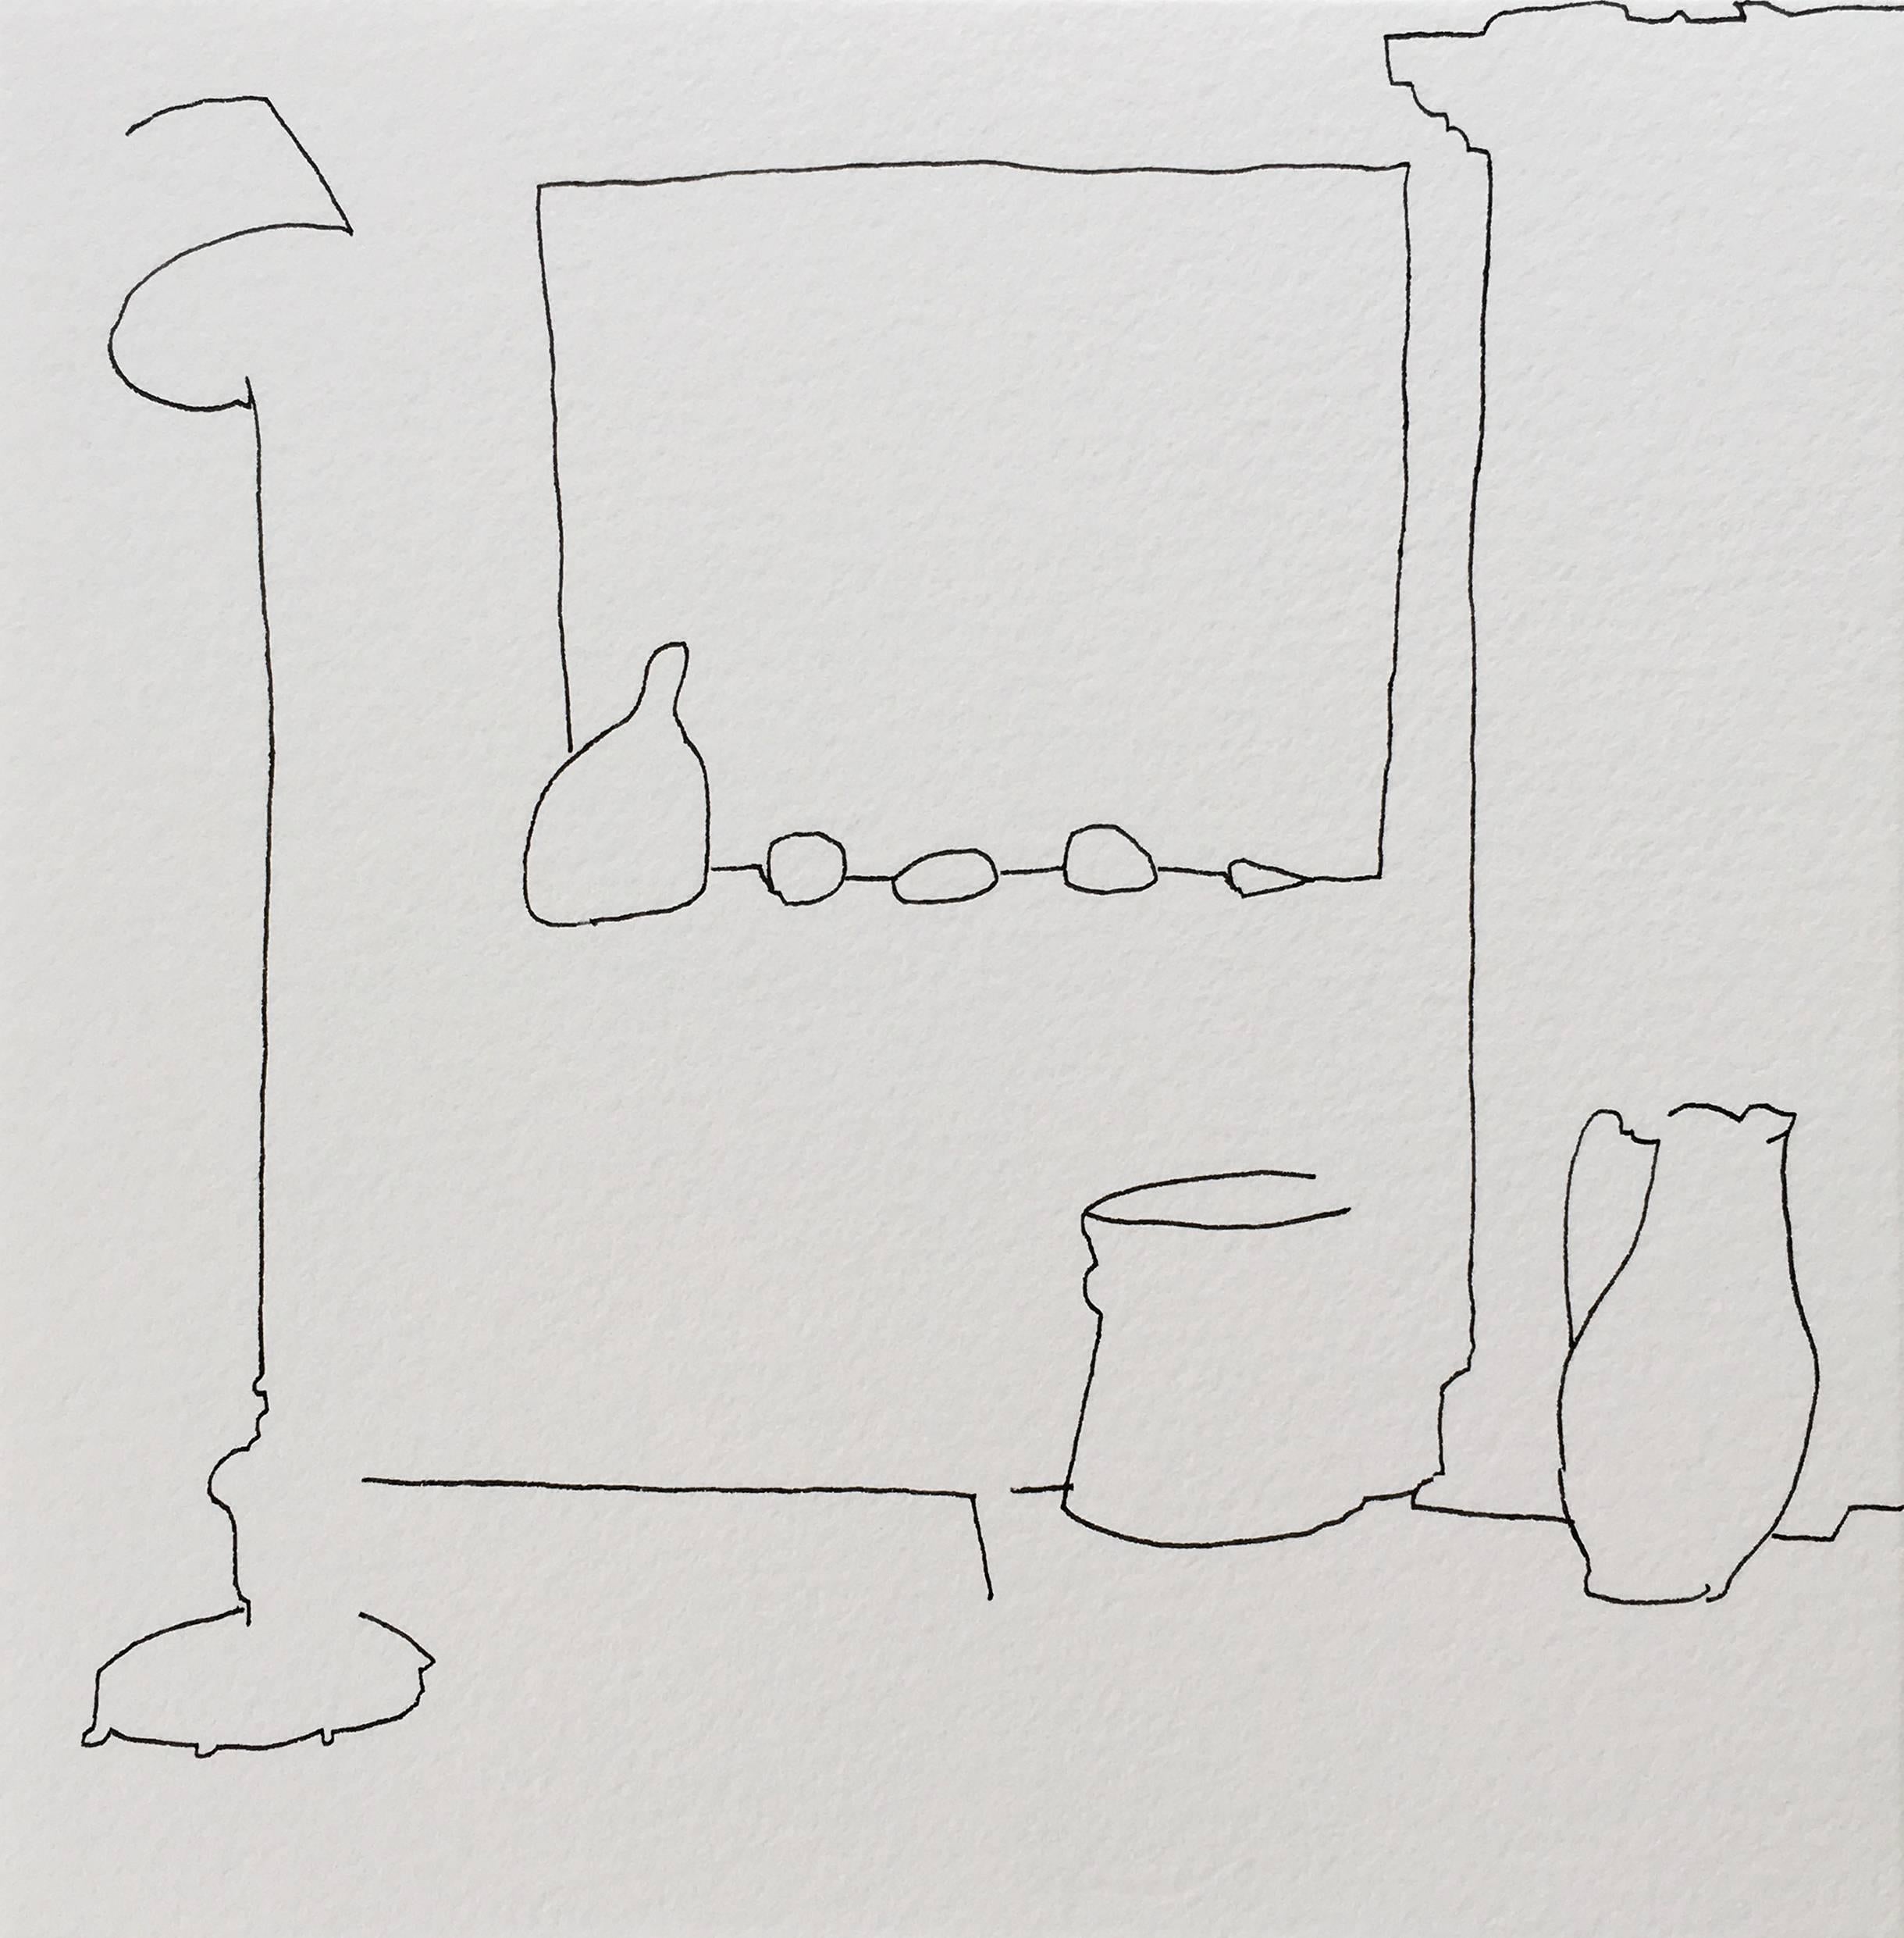 Barbara Marks Abstract Drawing - 4.9.18 No. 6